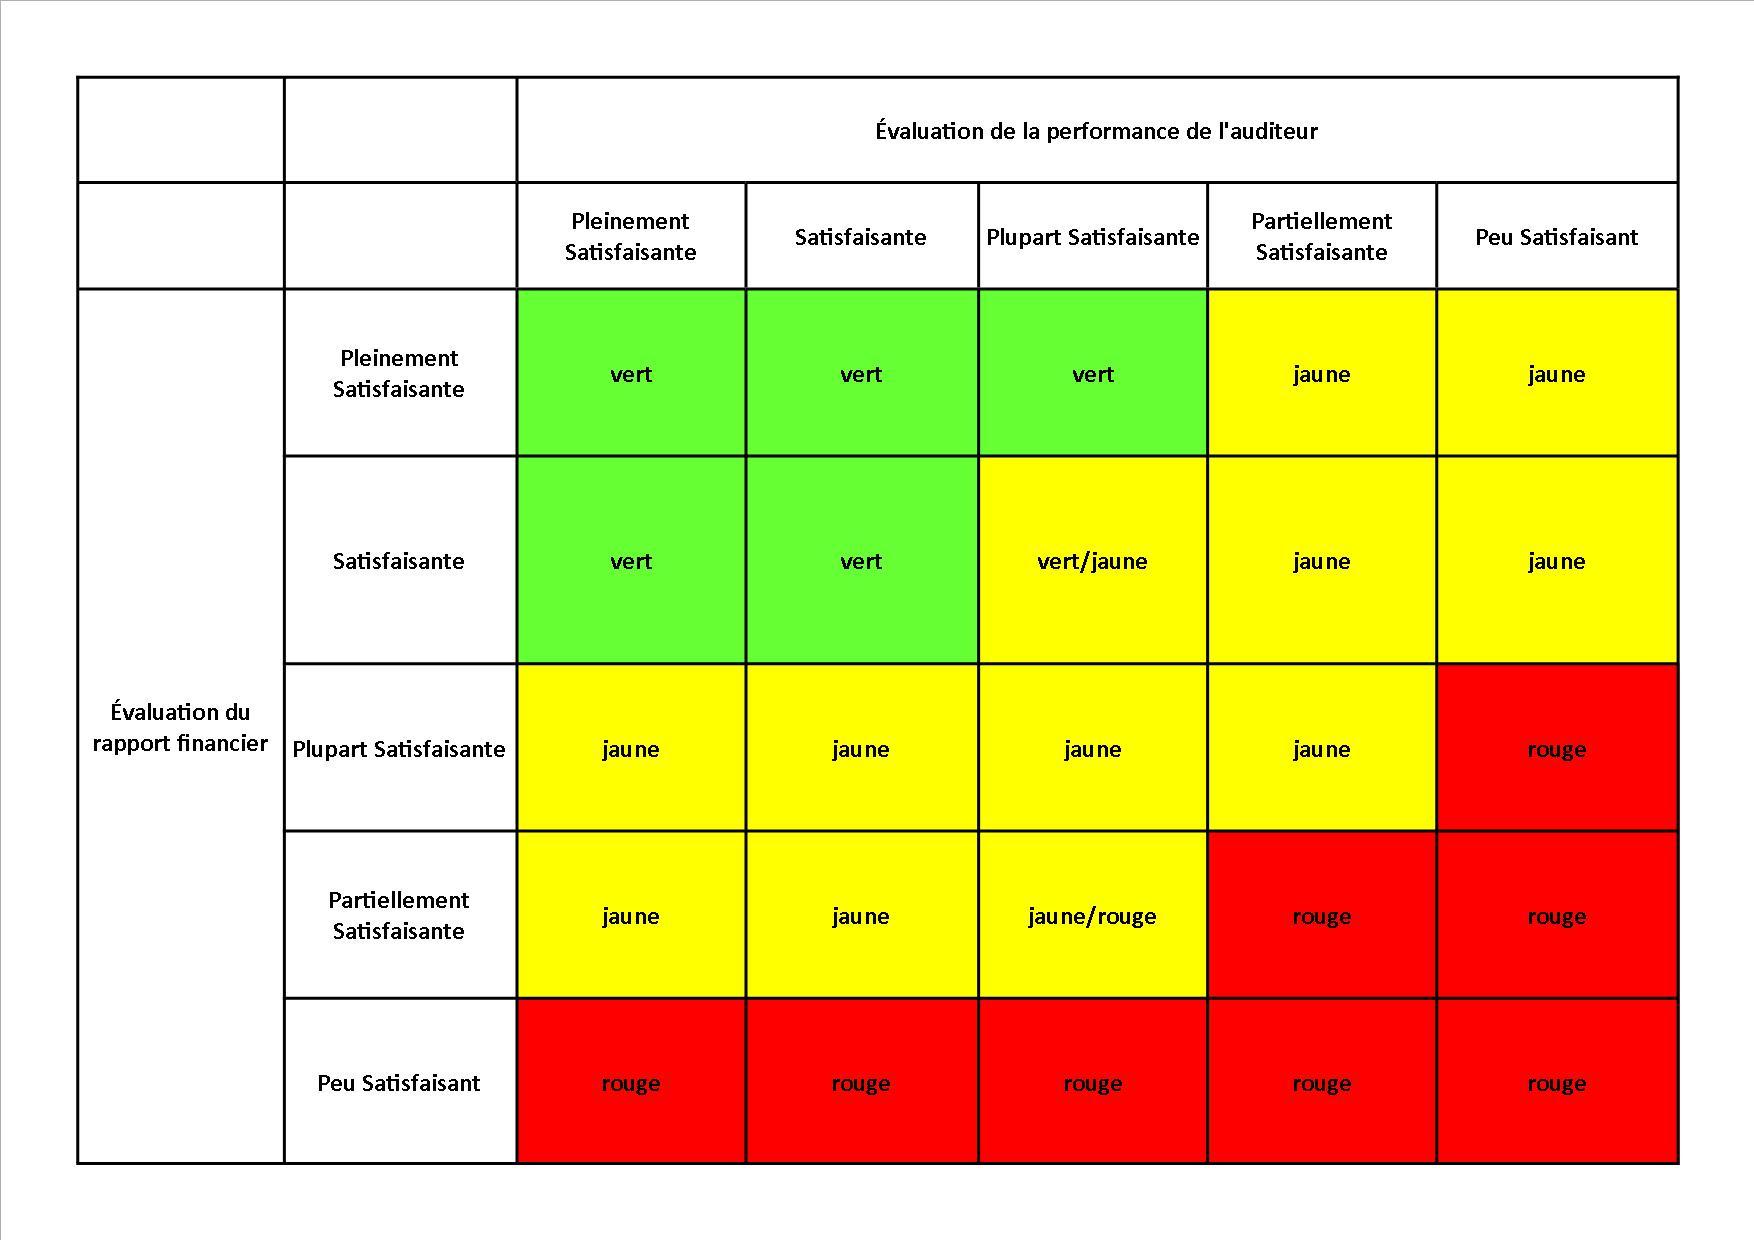 d'audit et l'évaluation de la qualité de l'information financière, comme l'illustre le tableau ci-dessous.